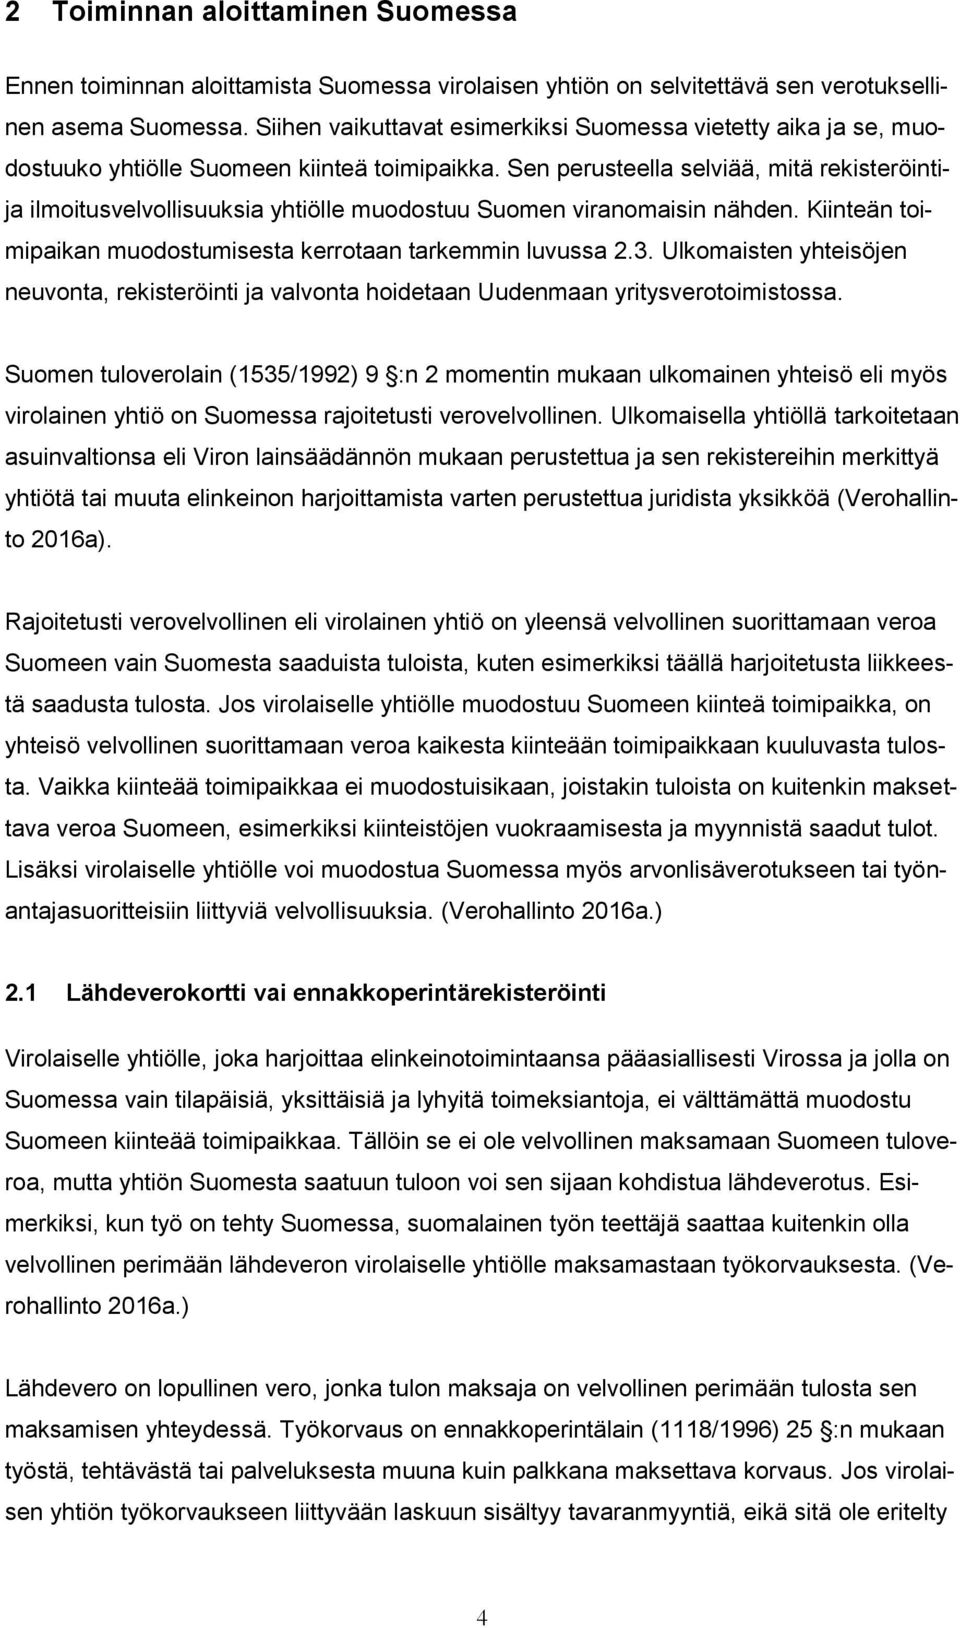 Sen perusteella selviää, mitä rekisteröintija ilmoitusvelvollisuuksia yhtiölle muodostuu Suomen viranomaisin nähden. Kiinteän toimipaikan muodostumisesta kerrotaan tarkemmin luvussa 2.3.